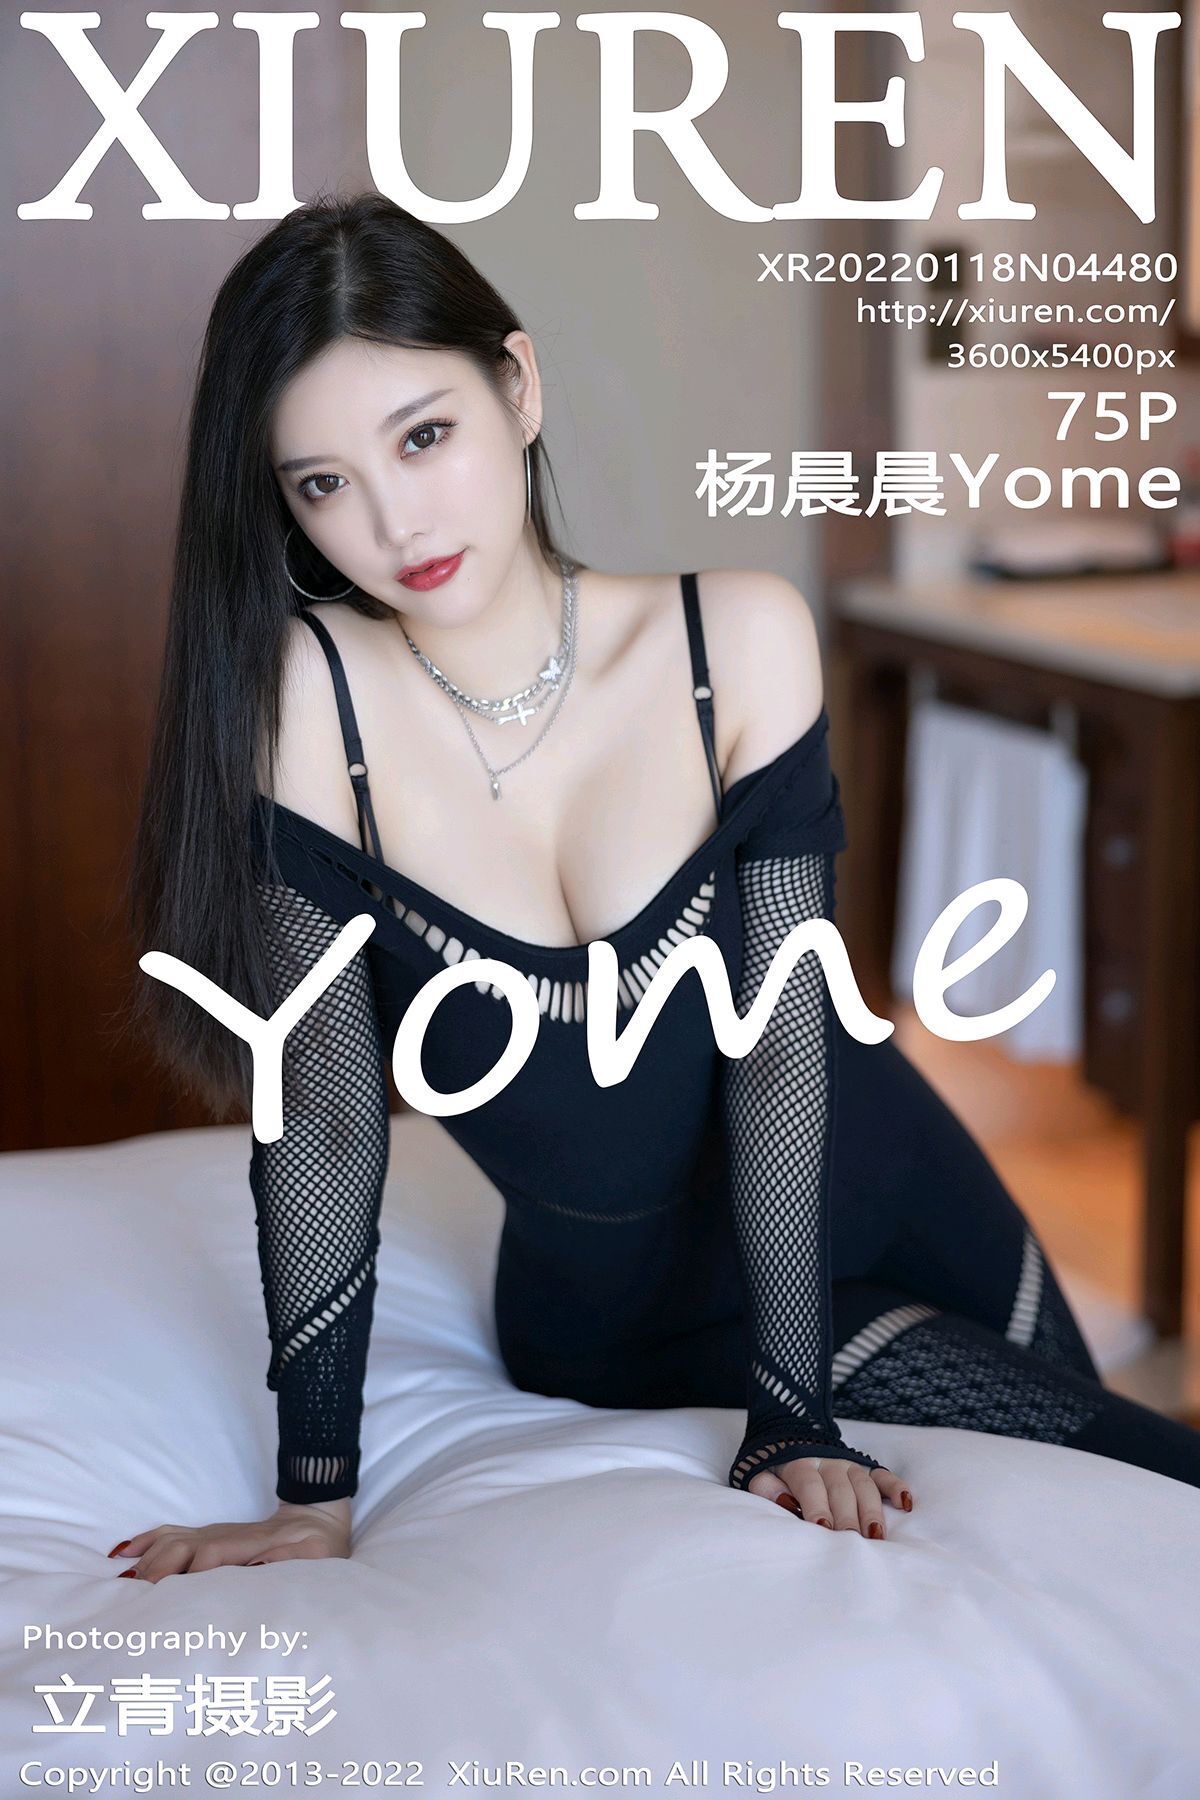 Xiuren 2022.01.18 NO.4480 Yang Chenchen Yome